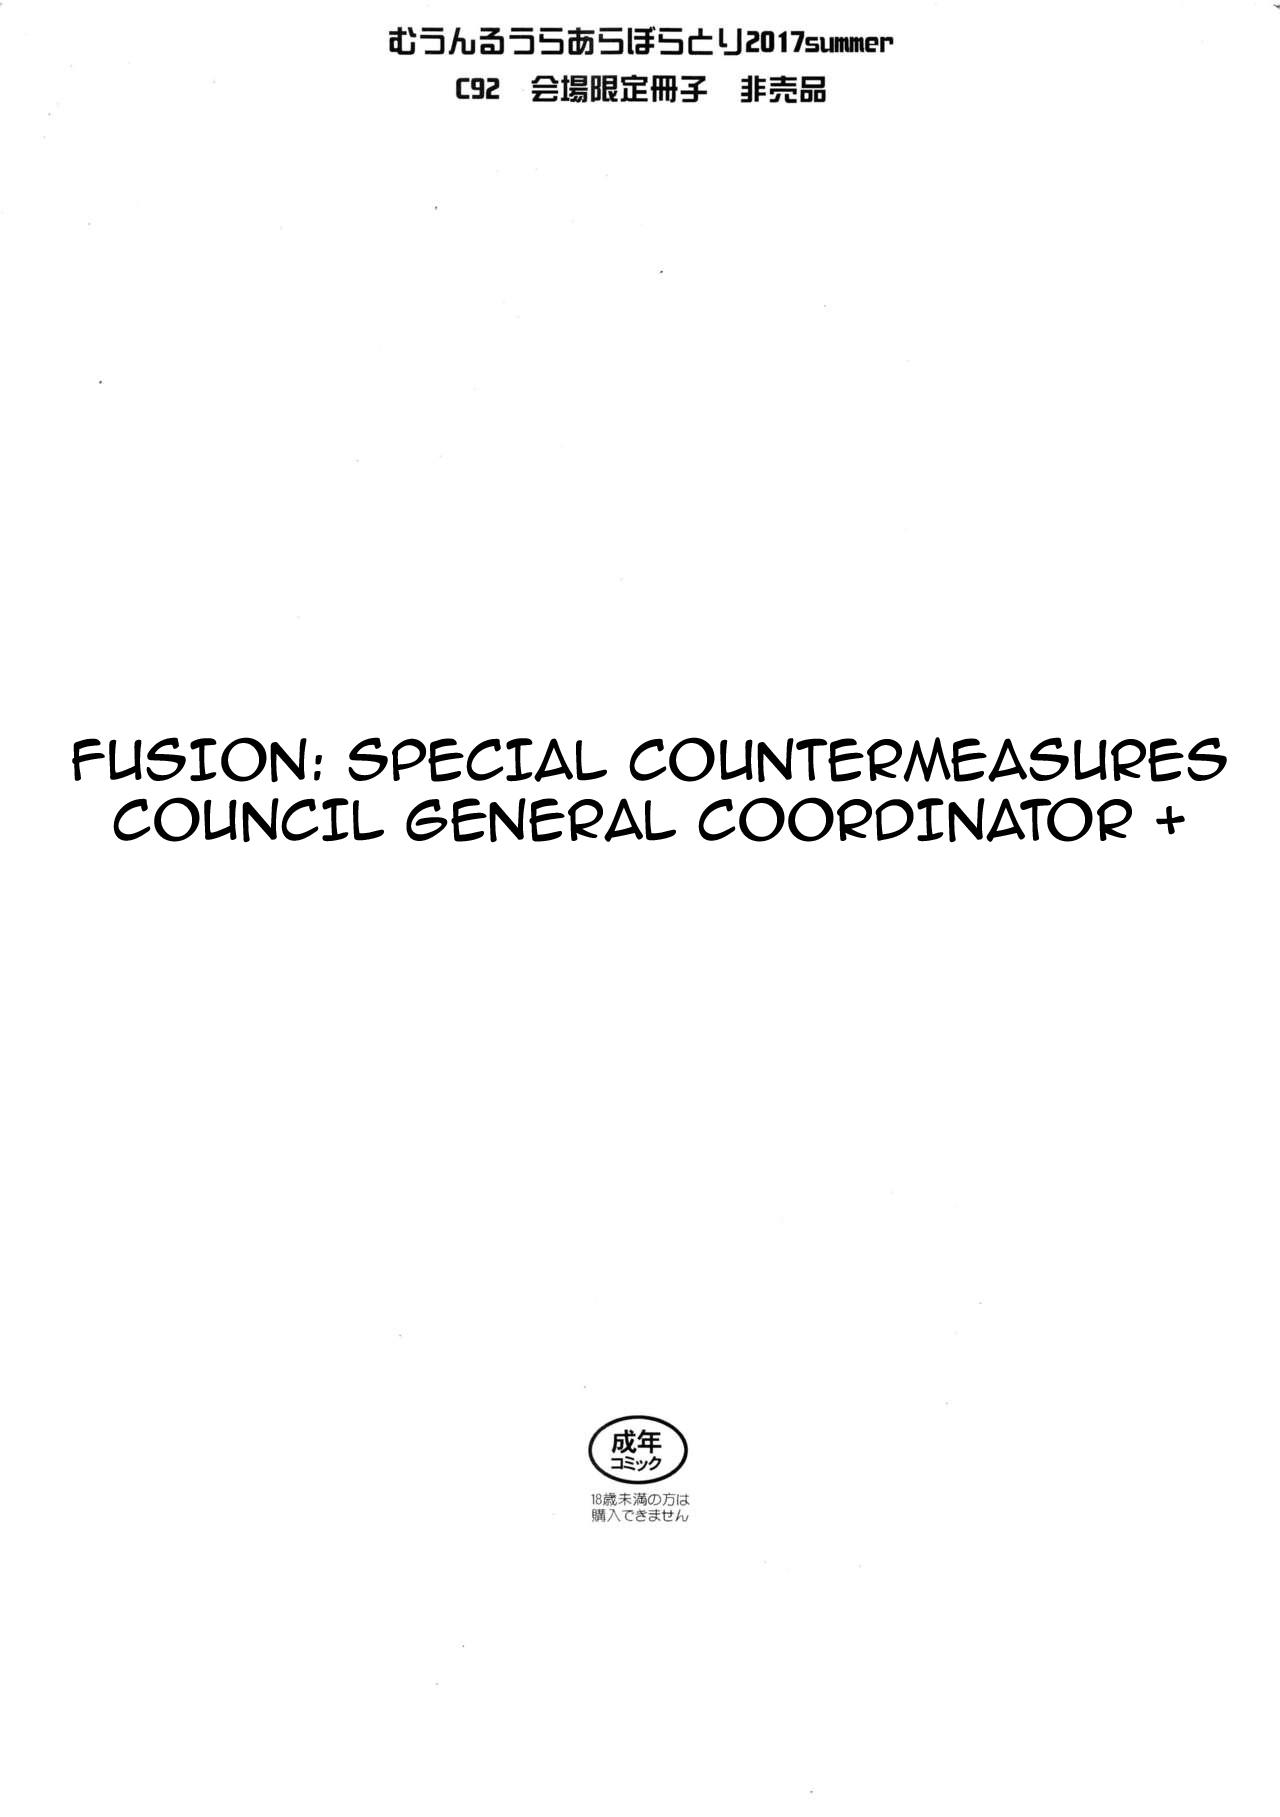 Yuukai: Tokubetsu Jitai Taisaku Kaigi Toukatsu Chouseikan + | Fusion Special Countermeasures Council General Coordinator + 0